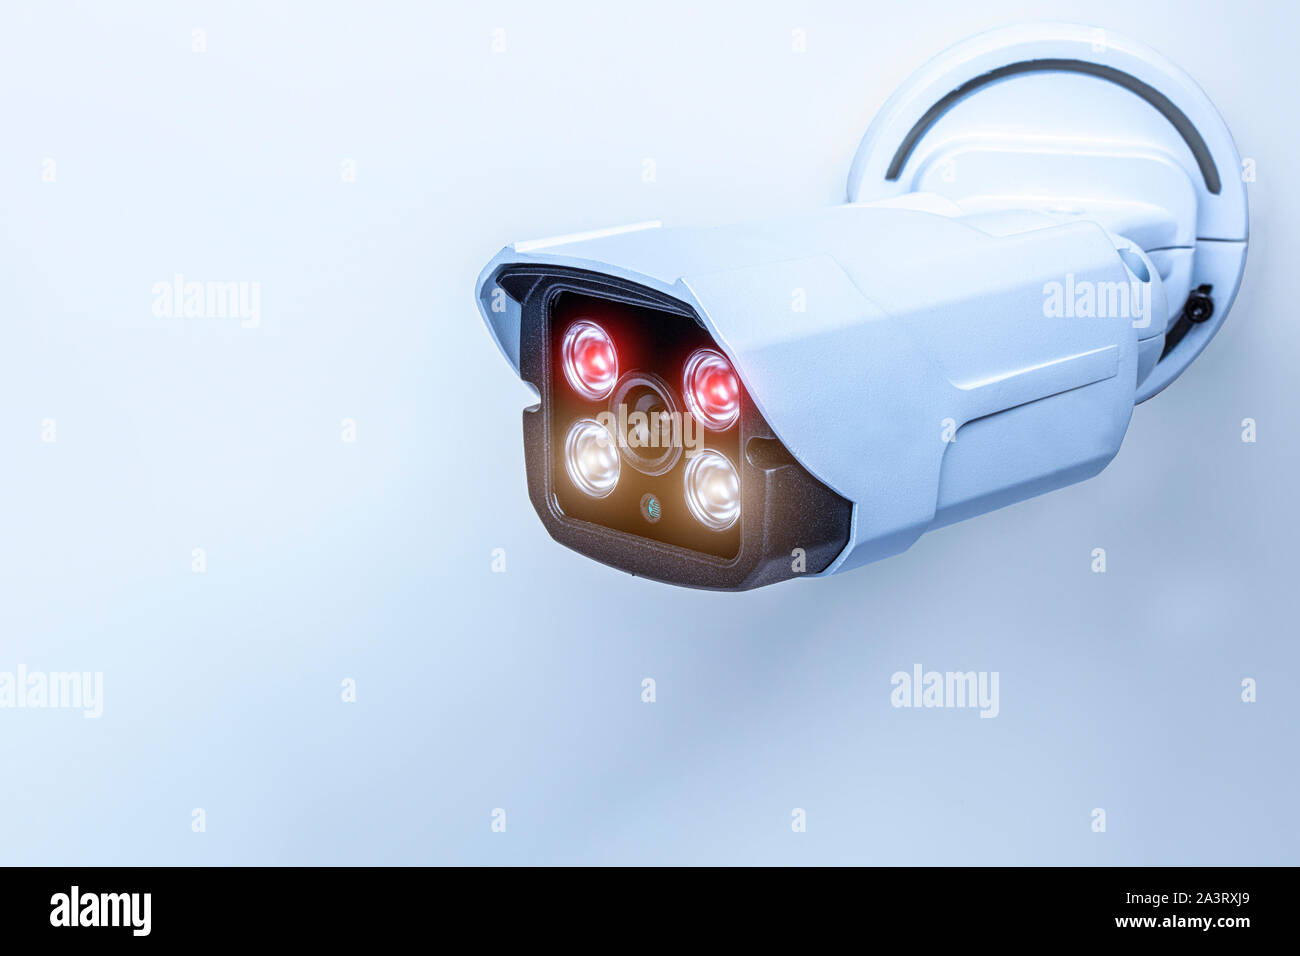 Dettaglio di una videocamera di sorveglianza con tecnologia a infrarossi per visione notturna. Concetto di sicurezza. Foto Stock